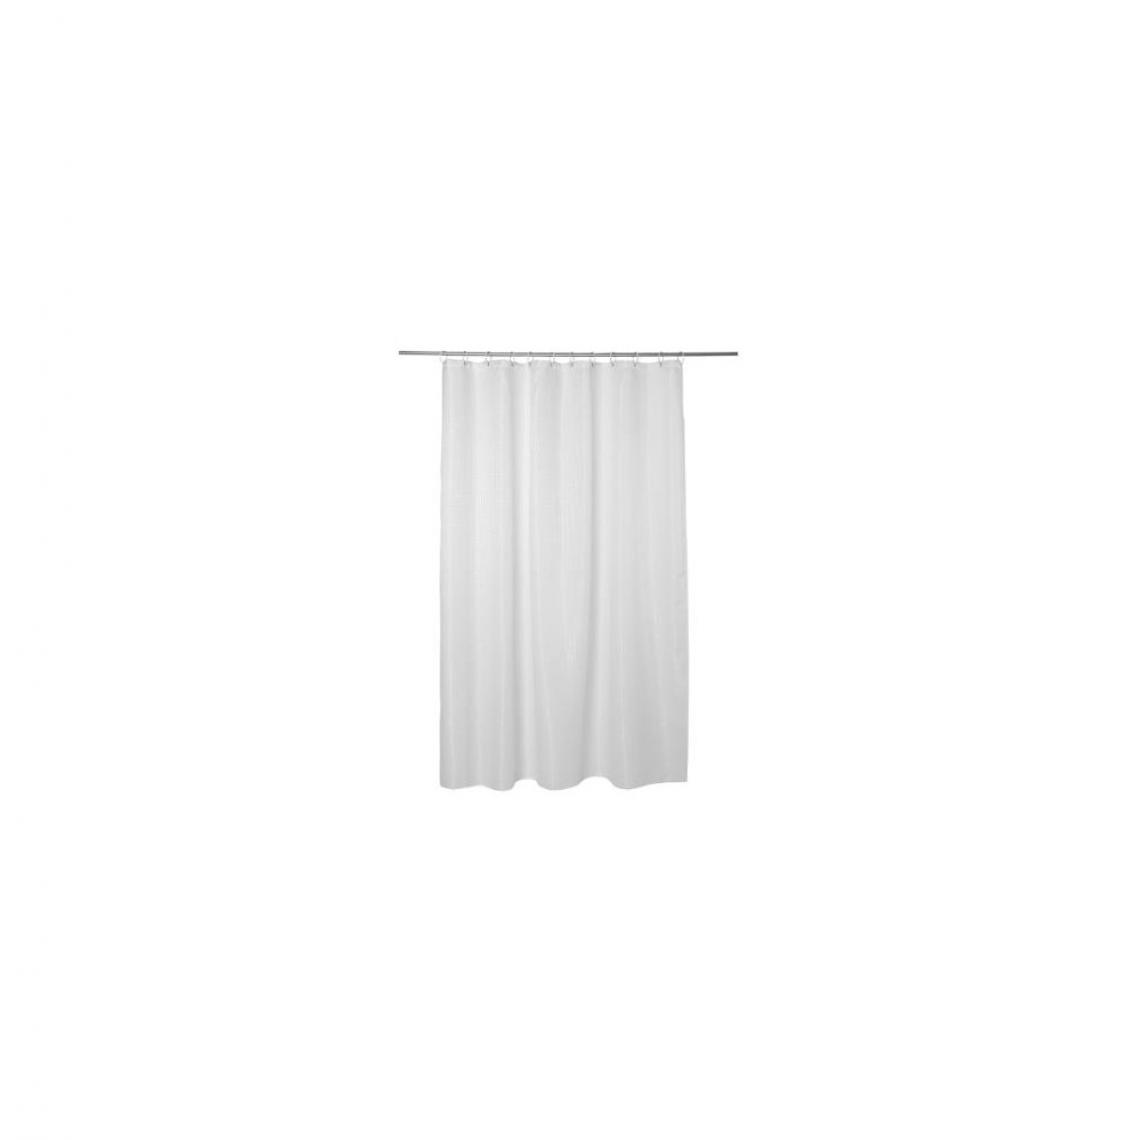 Ac-Deco - Rideau de douche en nid d'abeille - 180 x 200 cm - Blanc - Rideaux douche